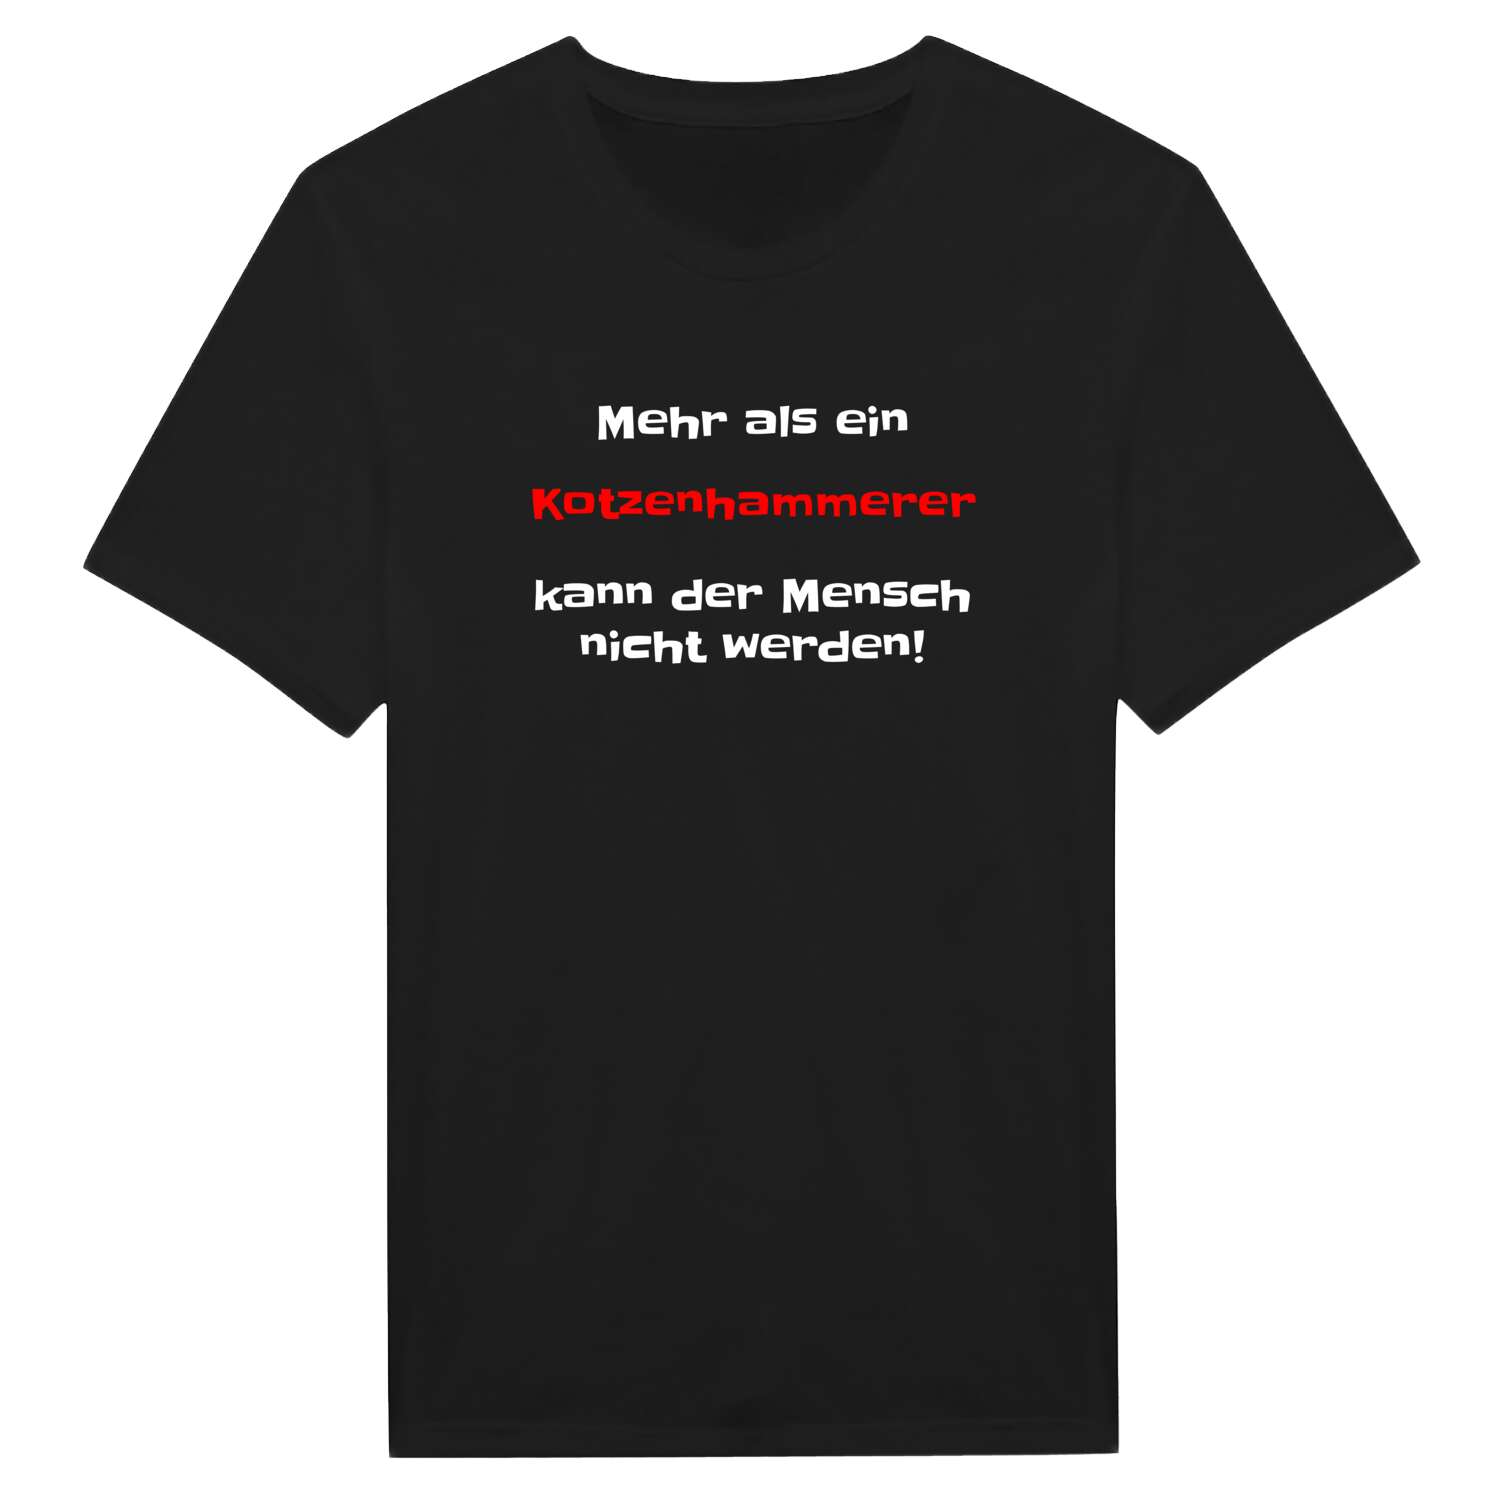 Kotzenhammer T-Shirt »Mehr als ein«